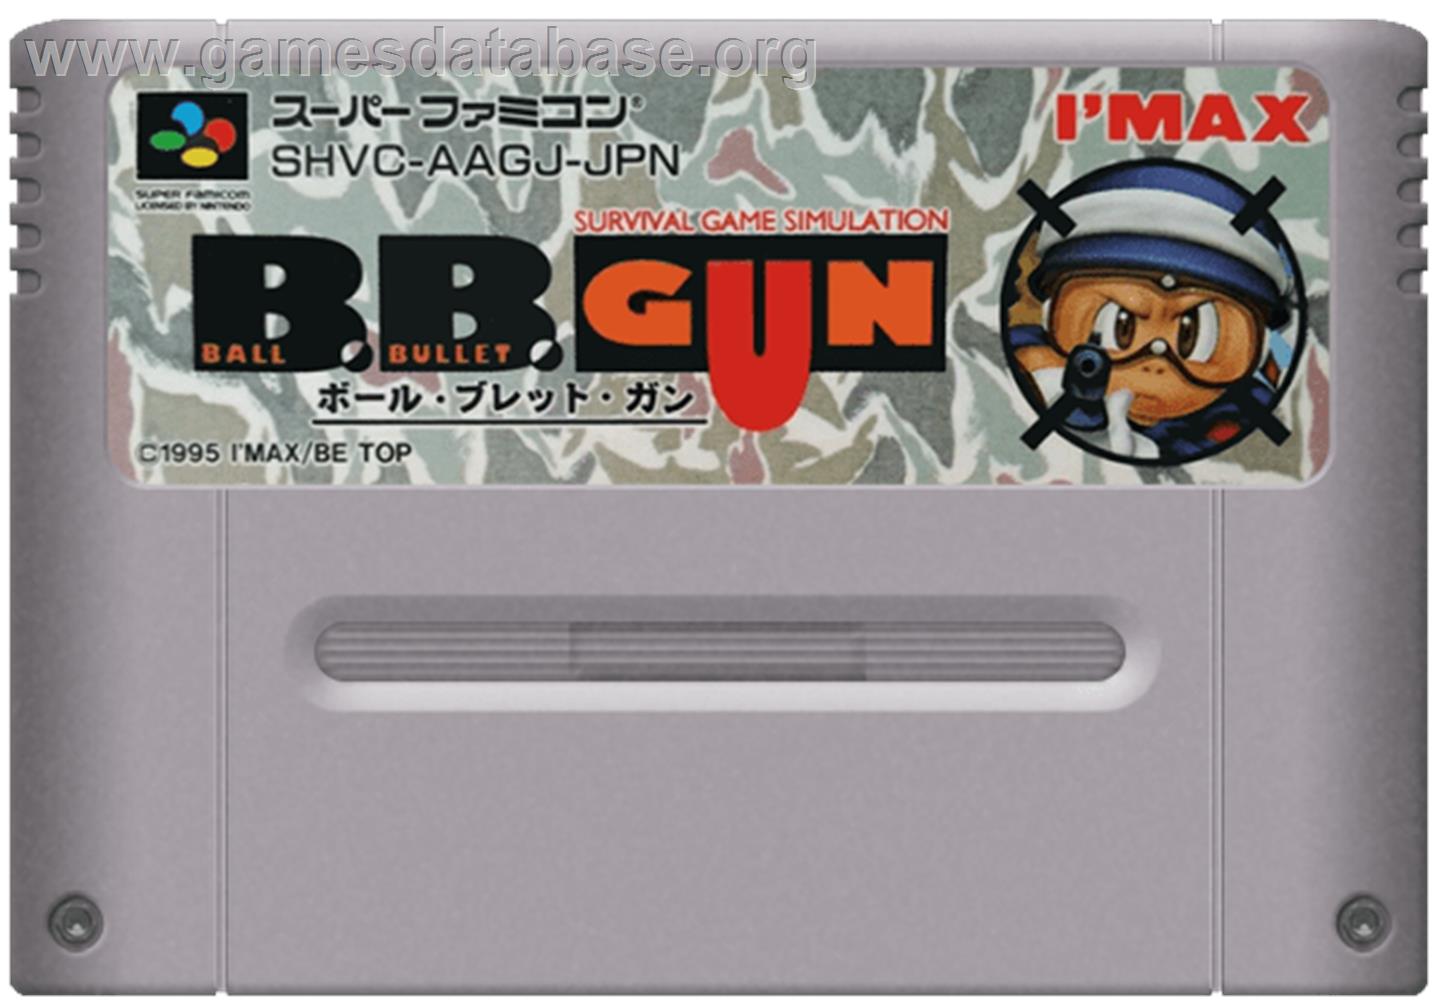 Ball Bullet Gun: Survival Game Simulation - Nintendo SNES - Artwork - Cartridge